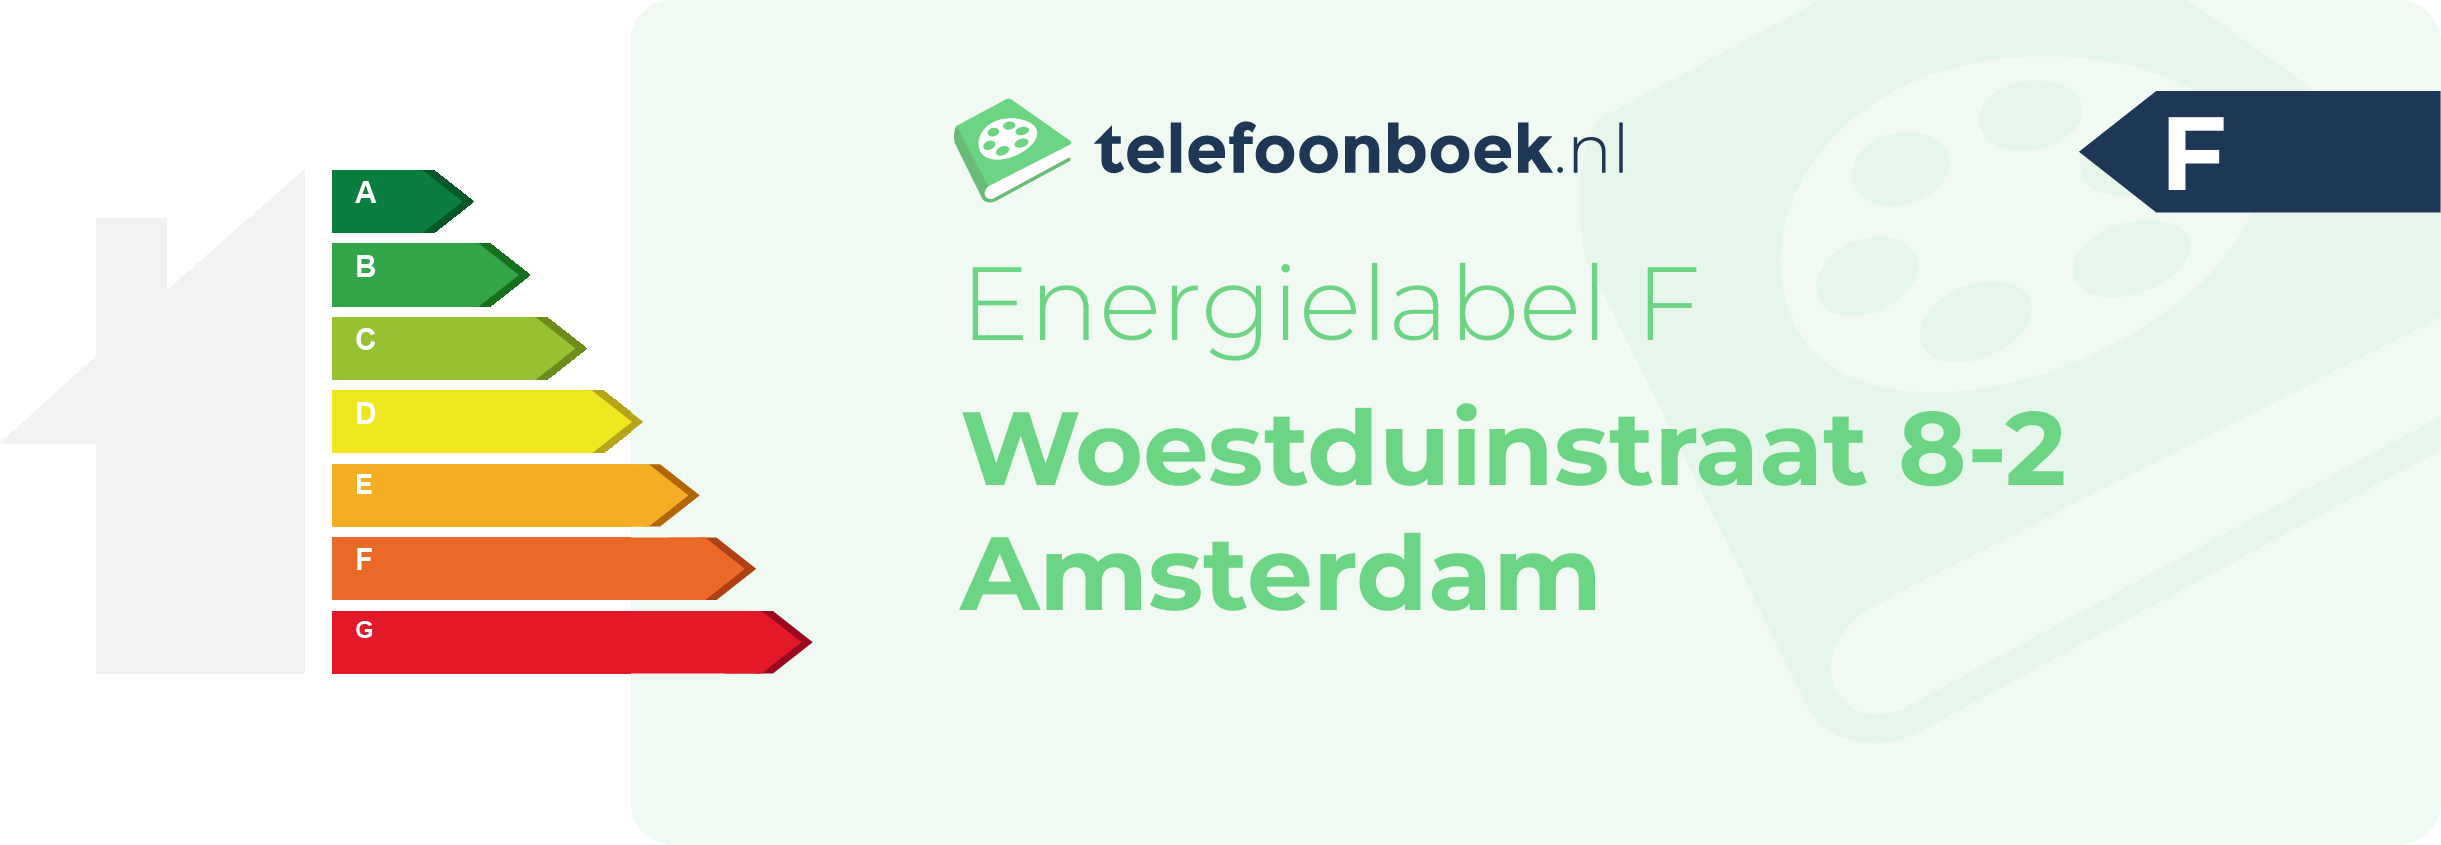 Energielabel Woestduinstraat 8-2 Amsterdam